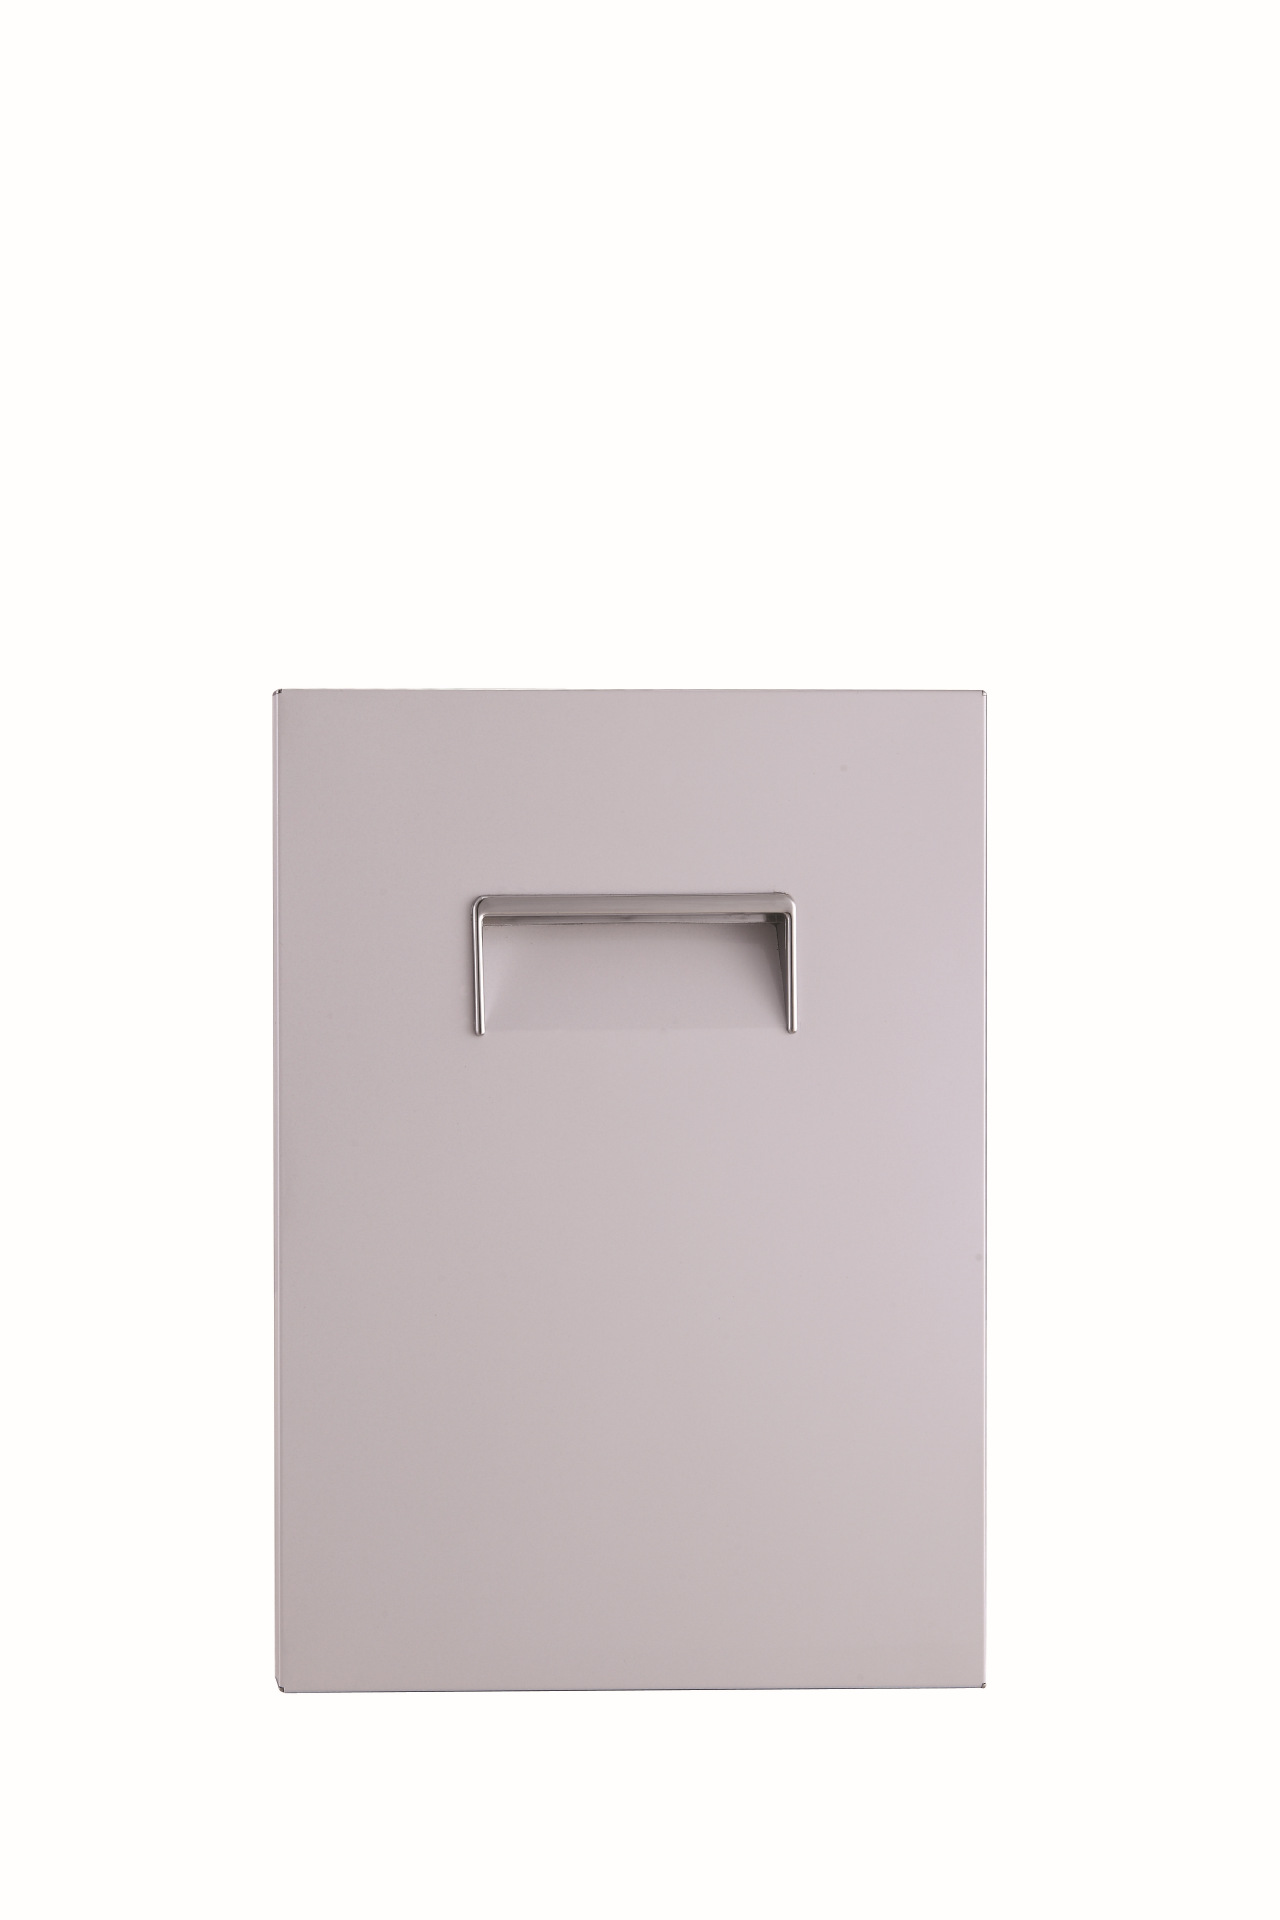 欧式铝材门板 厨柜门板 卫浴柜门板 浴室柜板材